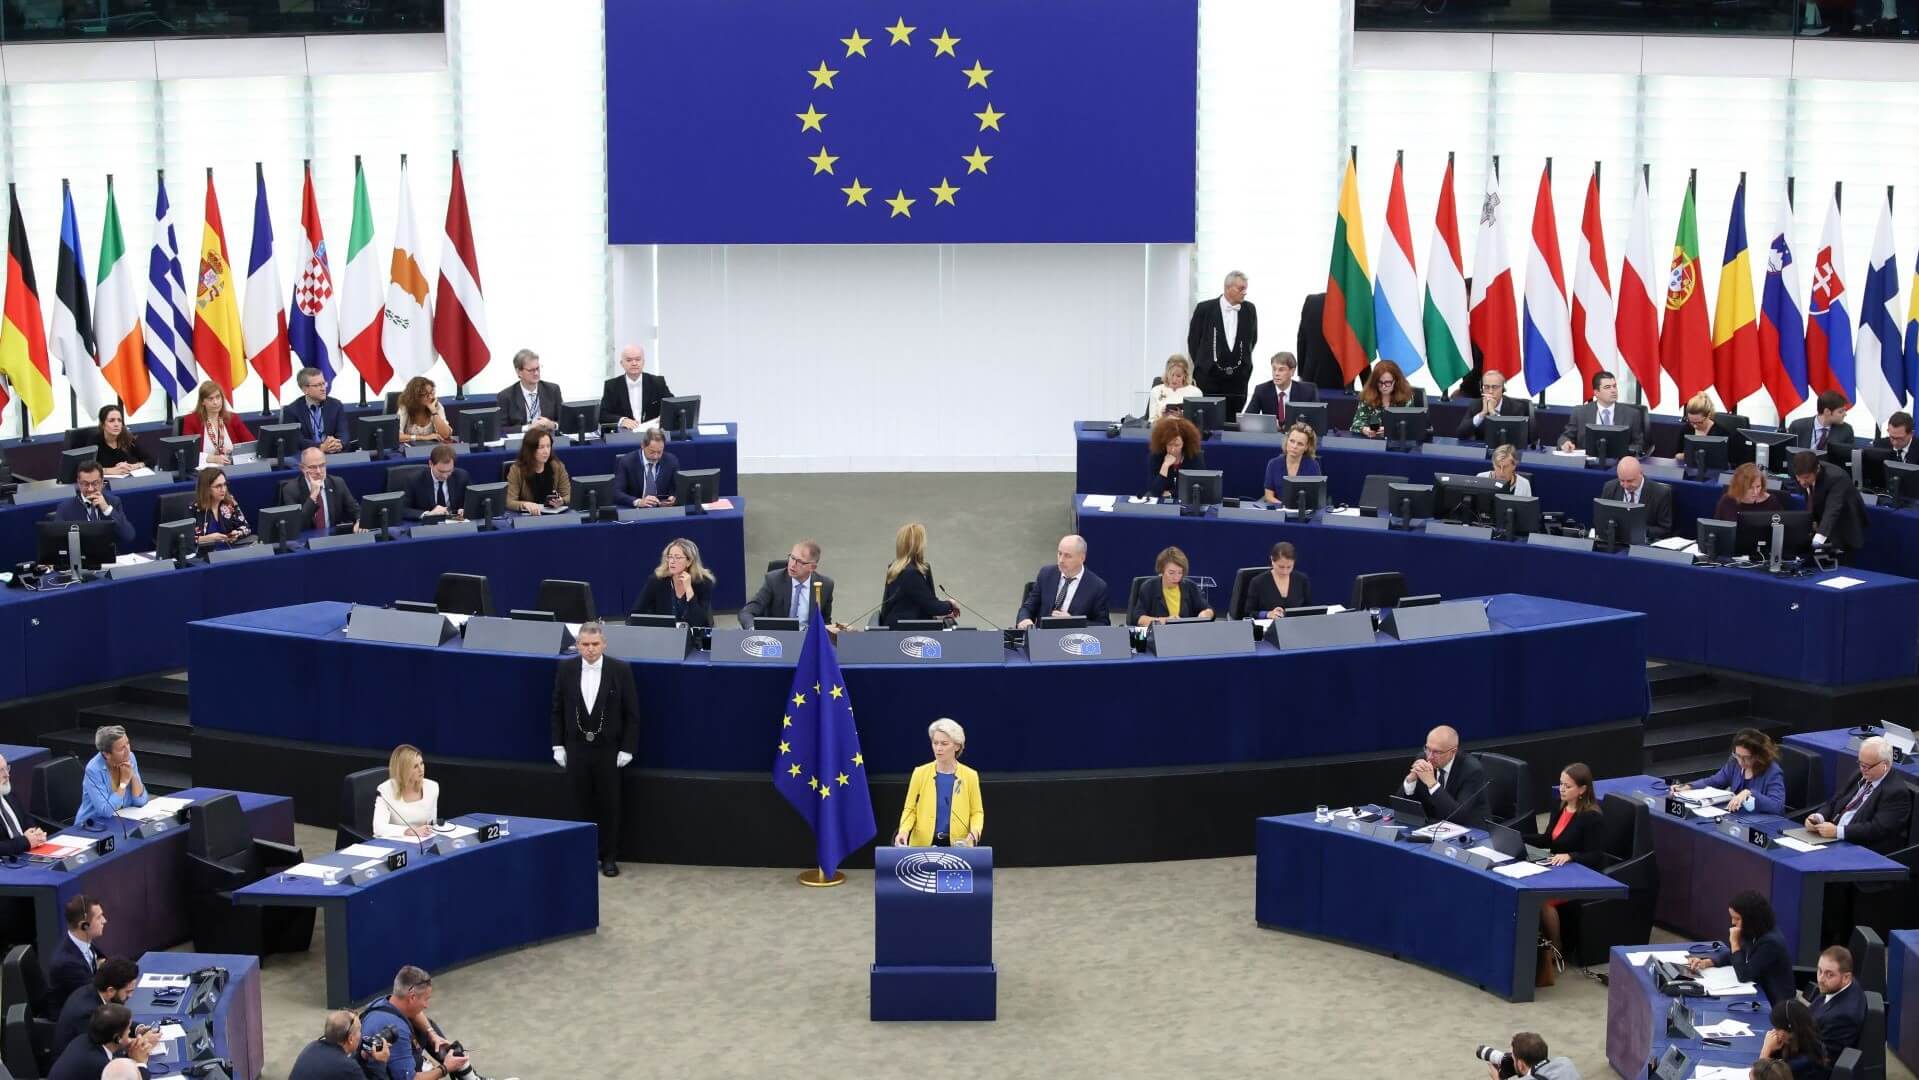 Ursula von der Leyen speaking to Members of the European Parliament